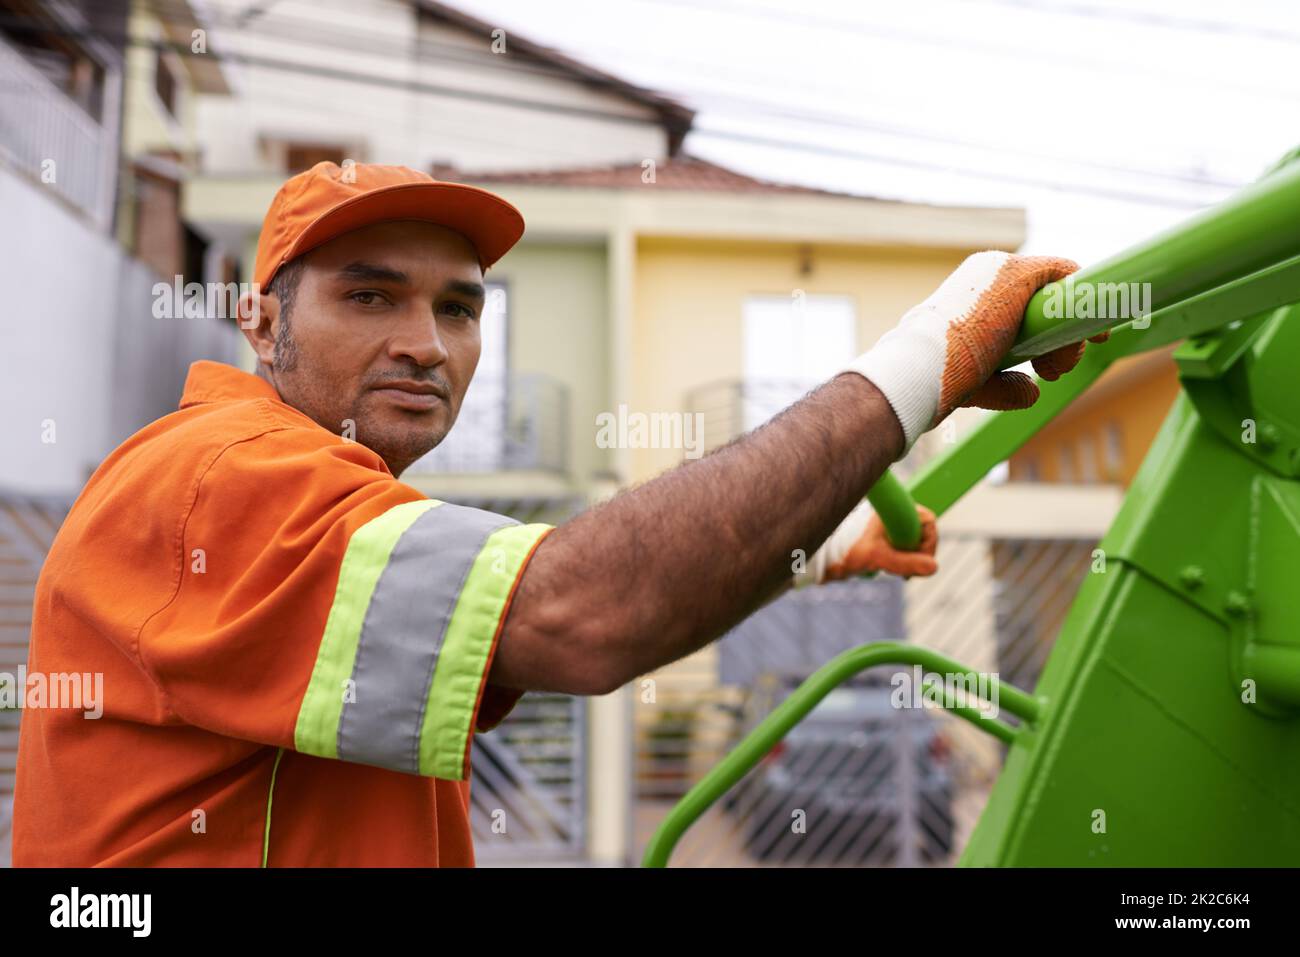 HES mantenere le nostre strade pulite. Scatto ritagliato di un lavoratore maschio il giorno della spazzatura. Foto Stock